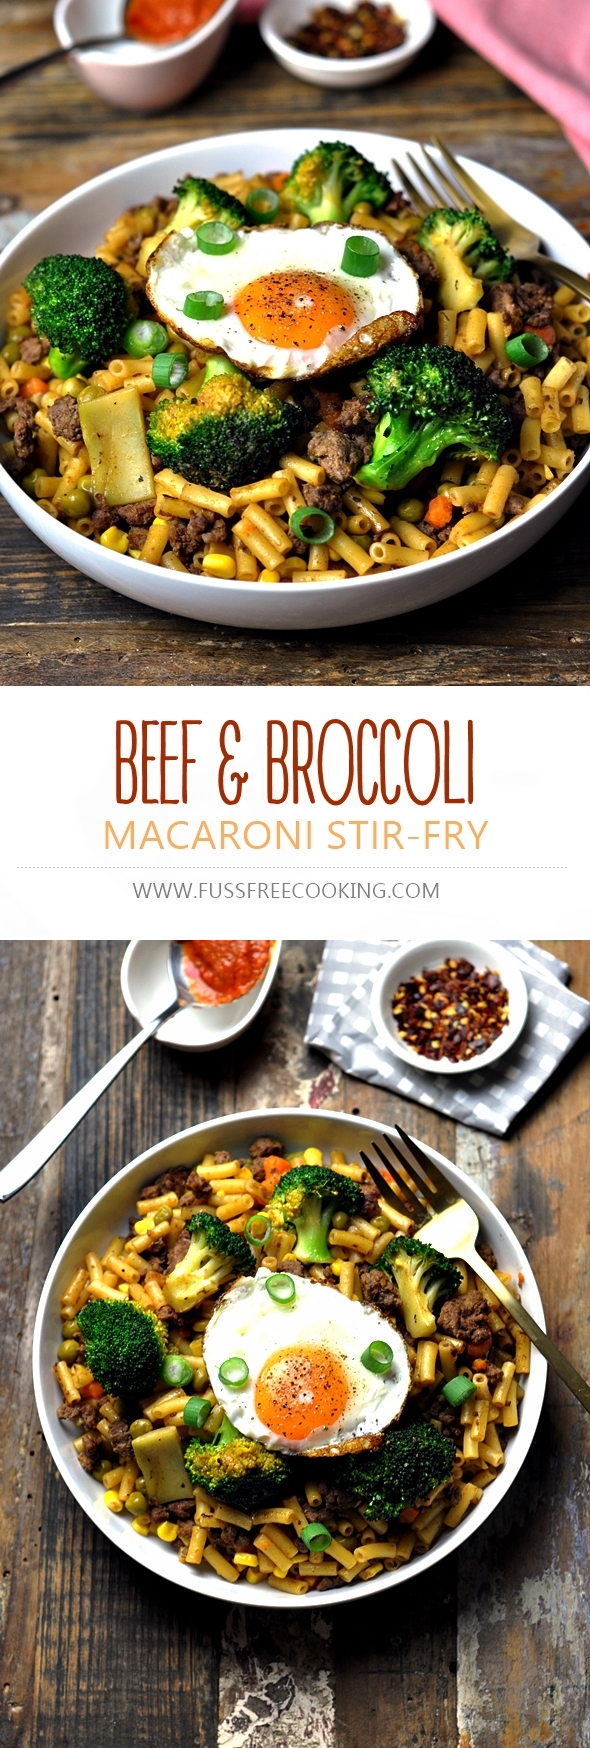 Beef & Broccoli Stirfry Macaroni "Chow Mac" | www.fussfreecooking.com